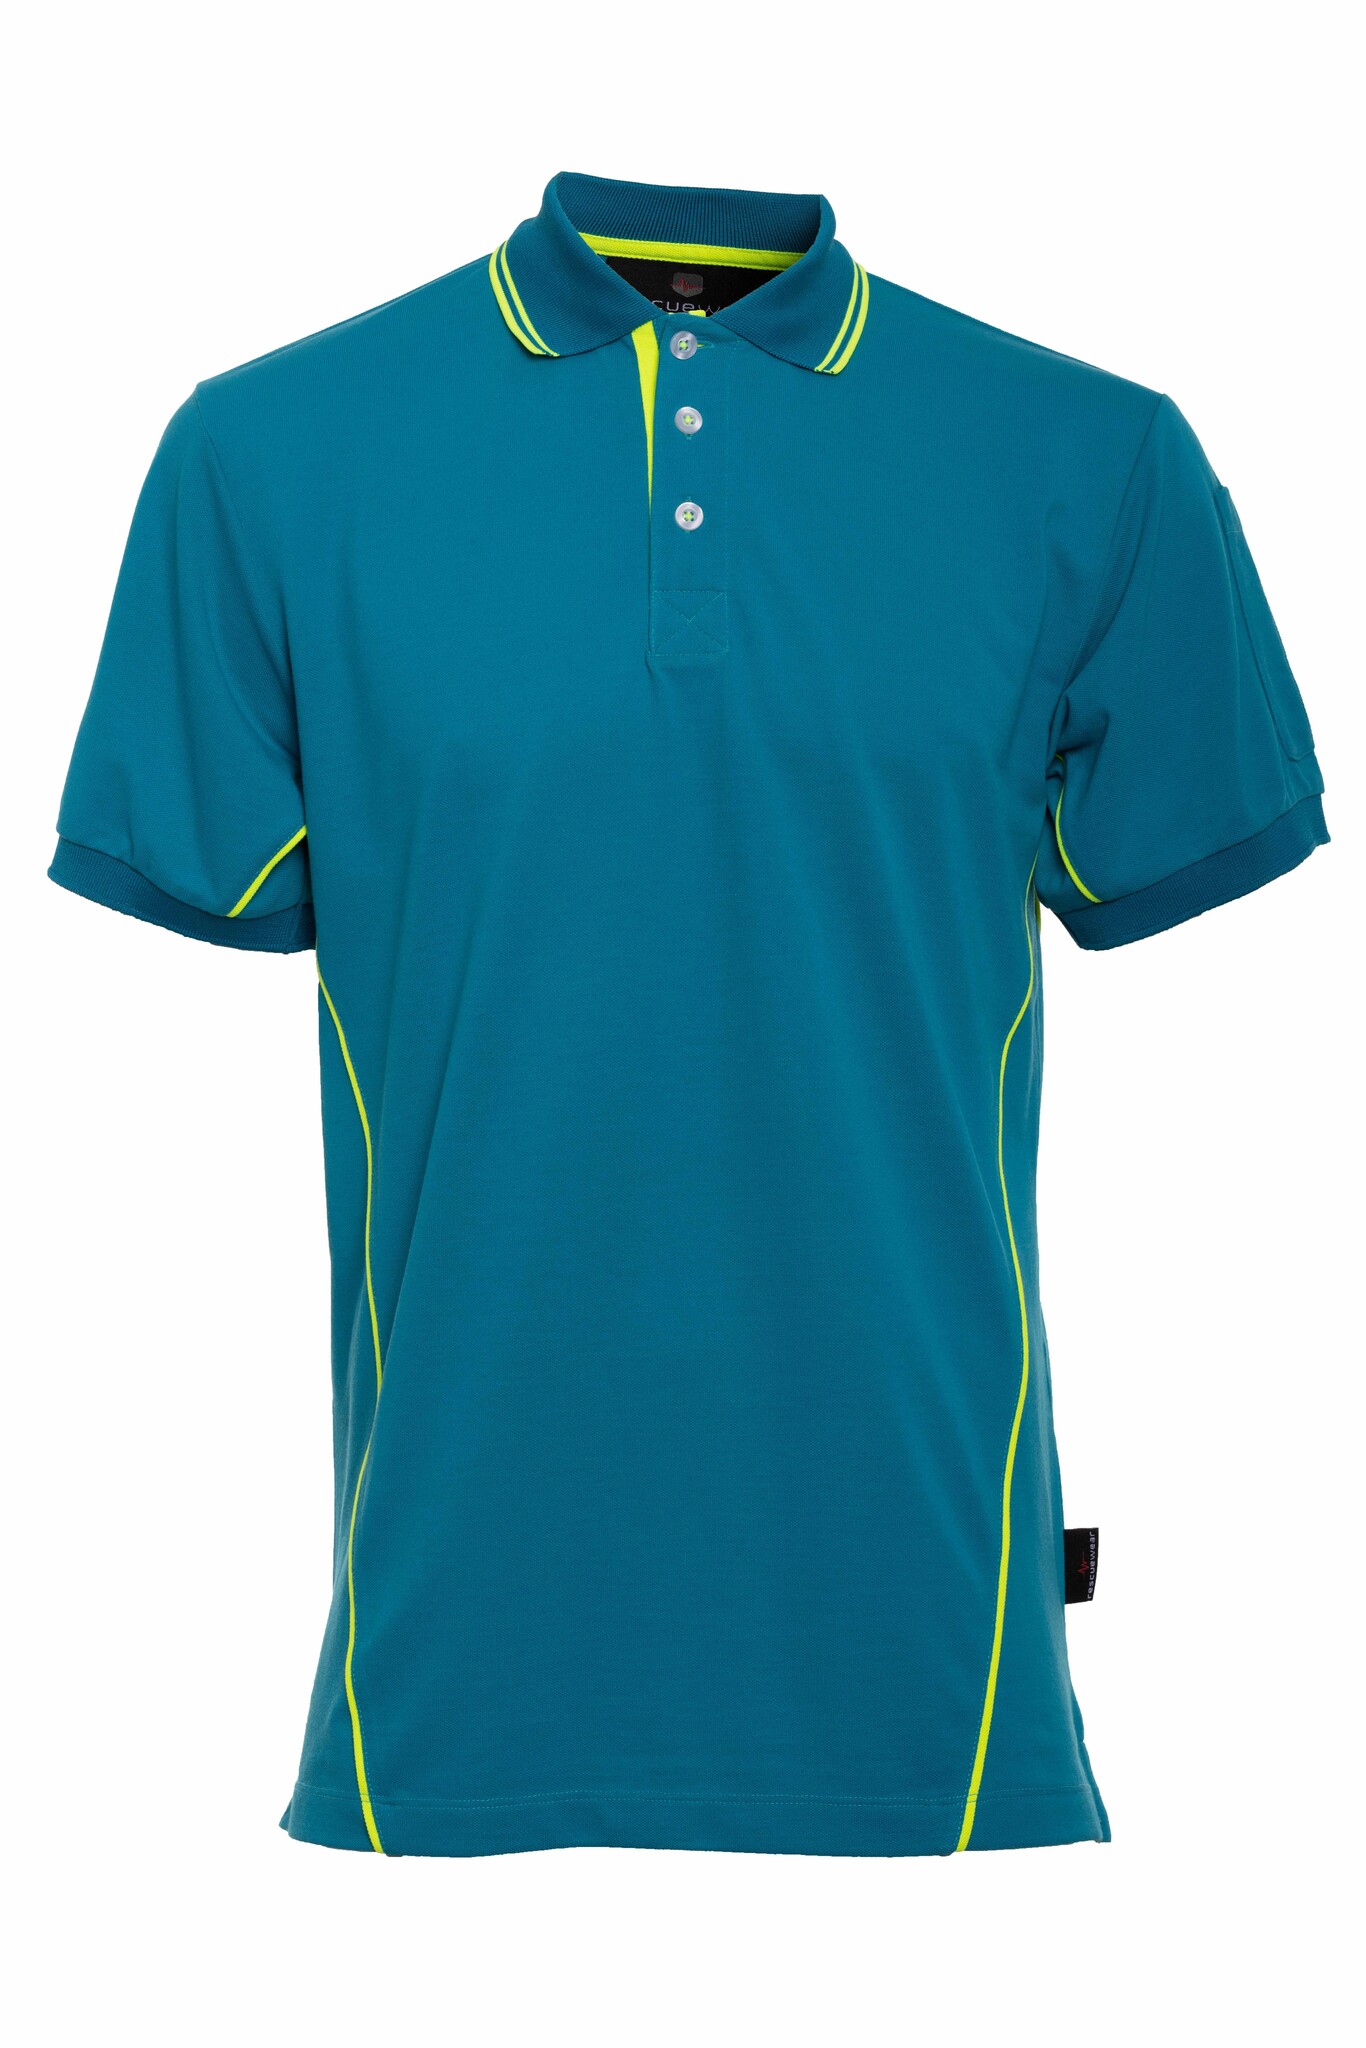 Basic, Blau ärmel, Kurze Poloshirt Paspeln mit Enamel/ Navy Neongelbe